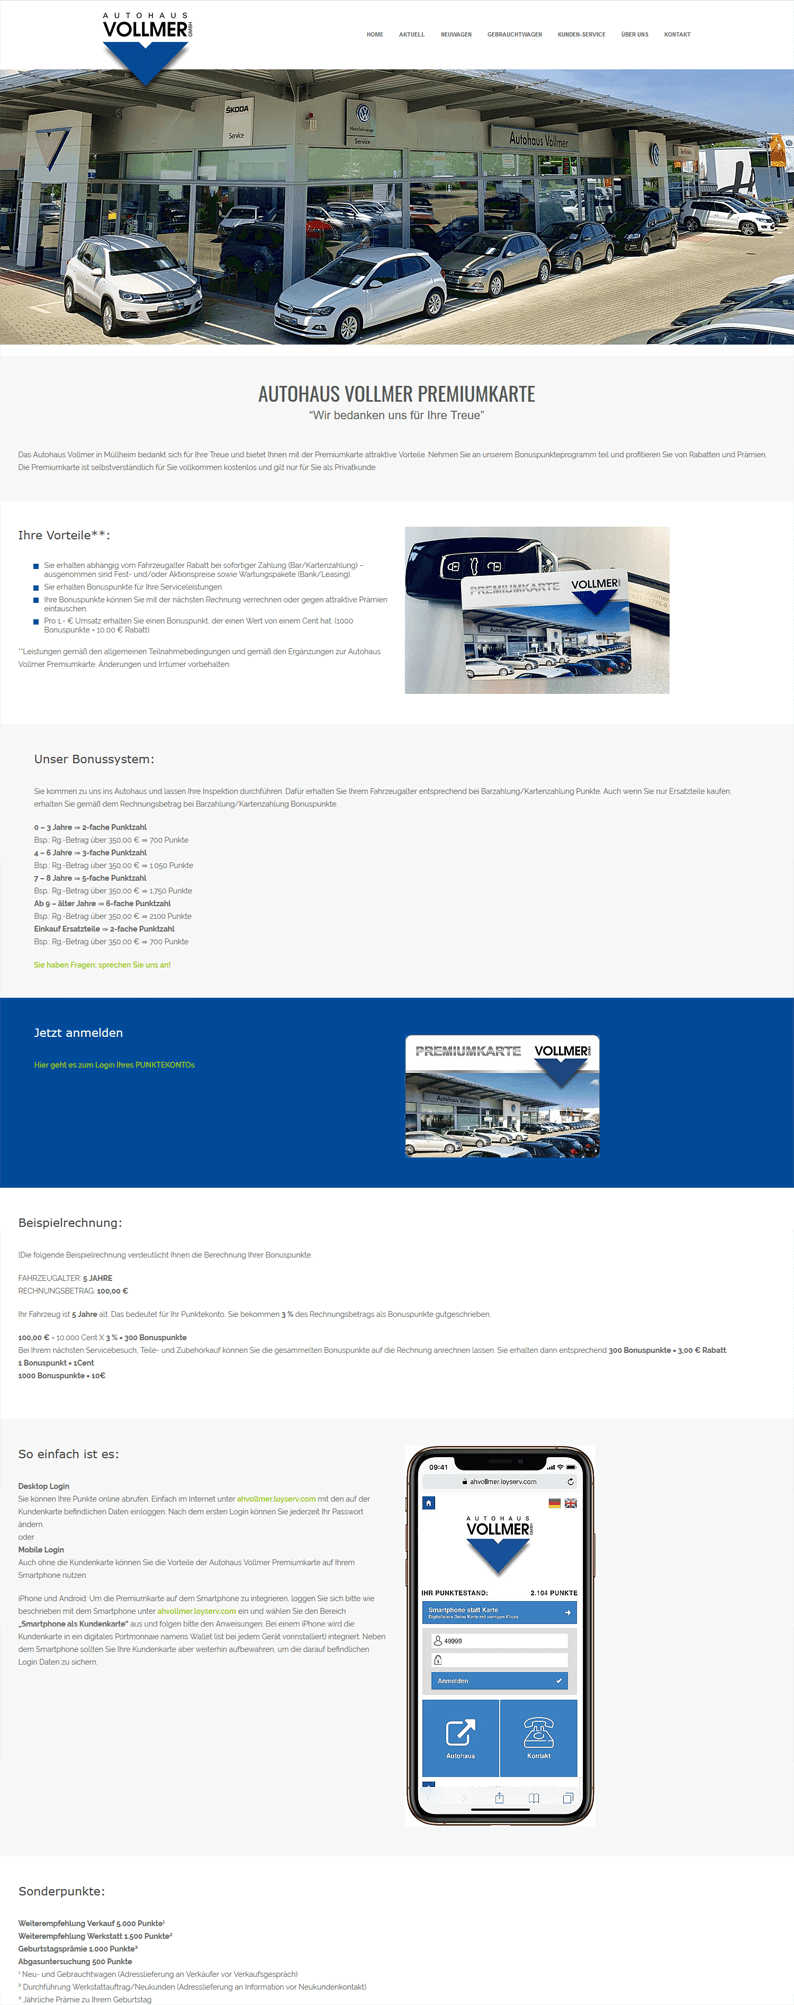 Eine detaillerte Beschreibung der Kundenkarte im VW Autohaus Vollmer